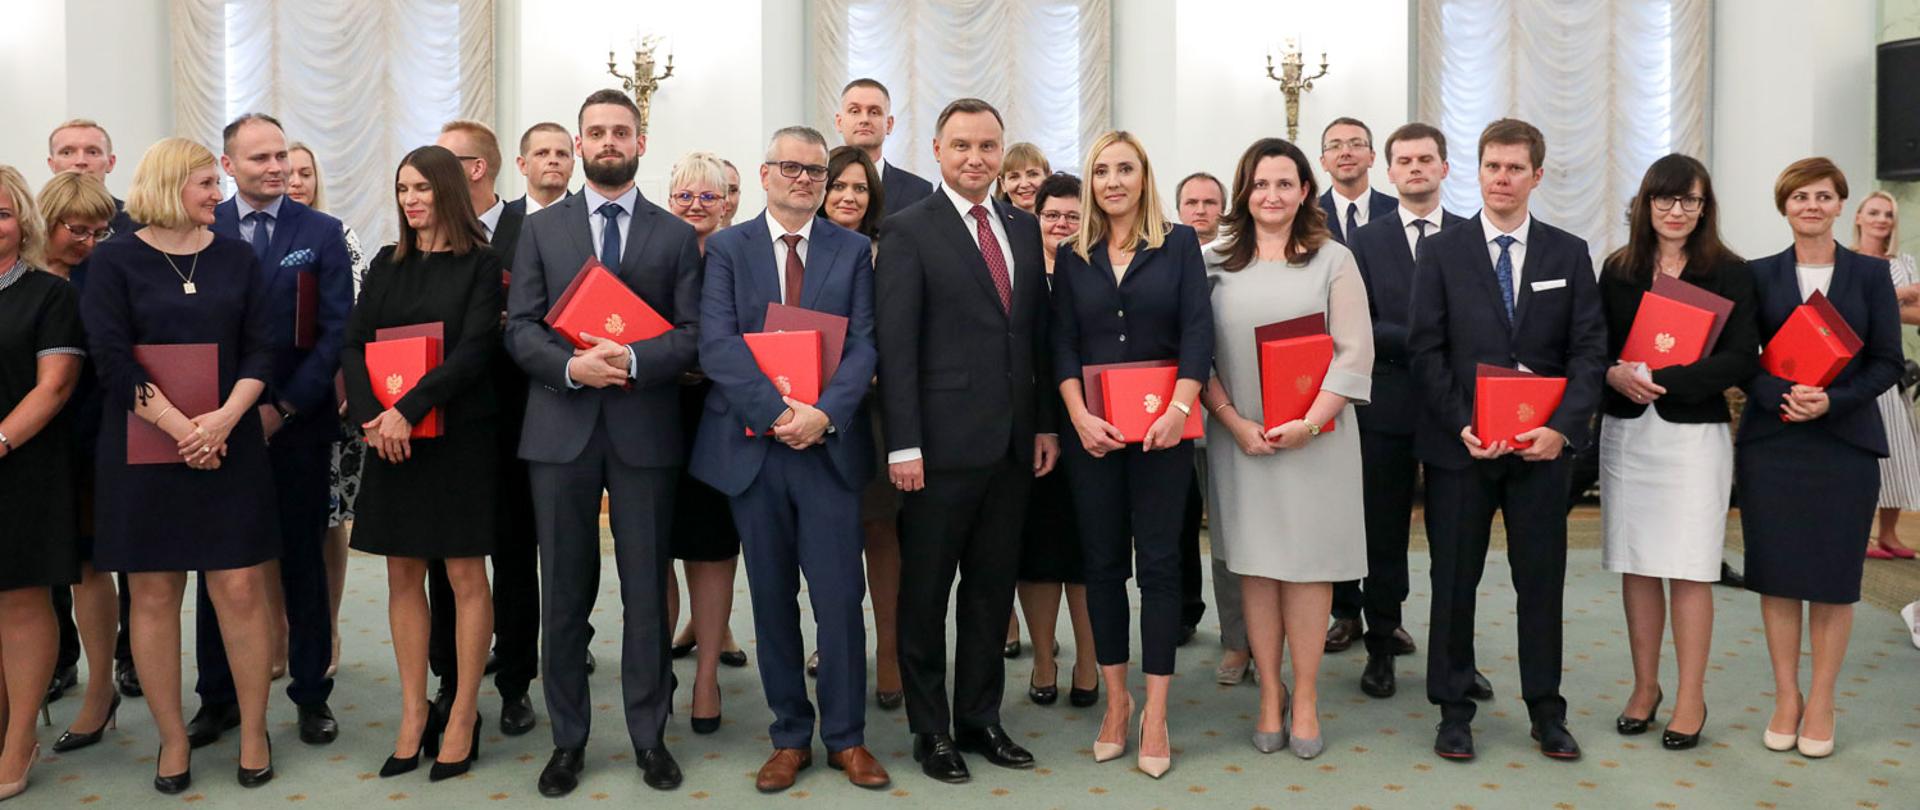 Źródło: Eliza Radzikowska-Białobrzeska/KPRP
Nominacje sędziowskie w Pałacu Prezydenckim